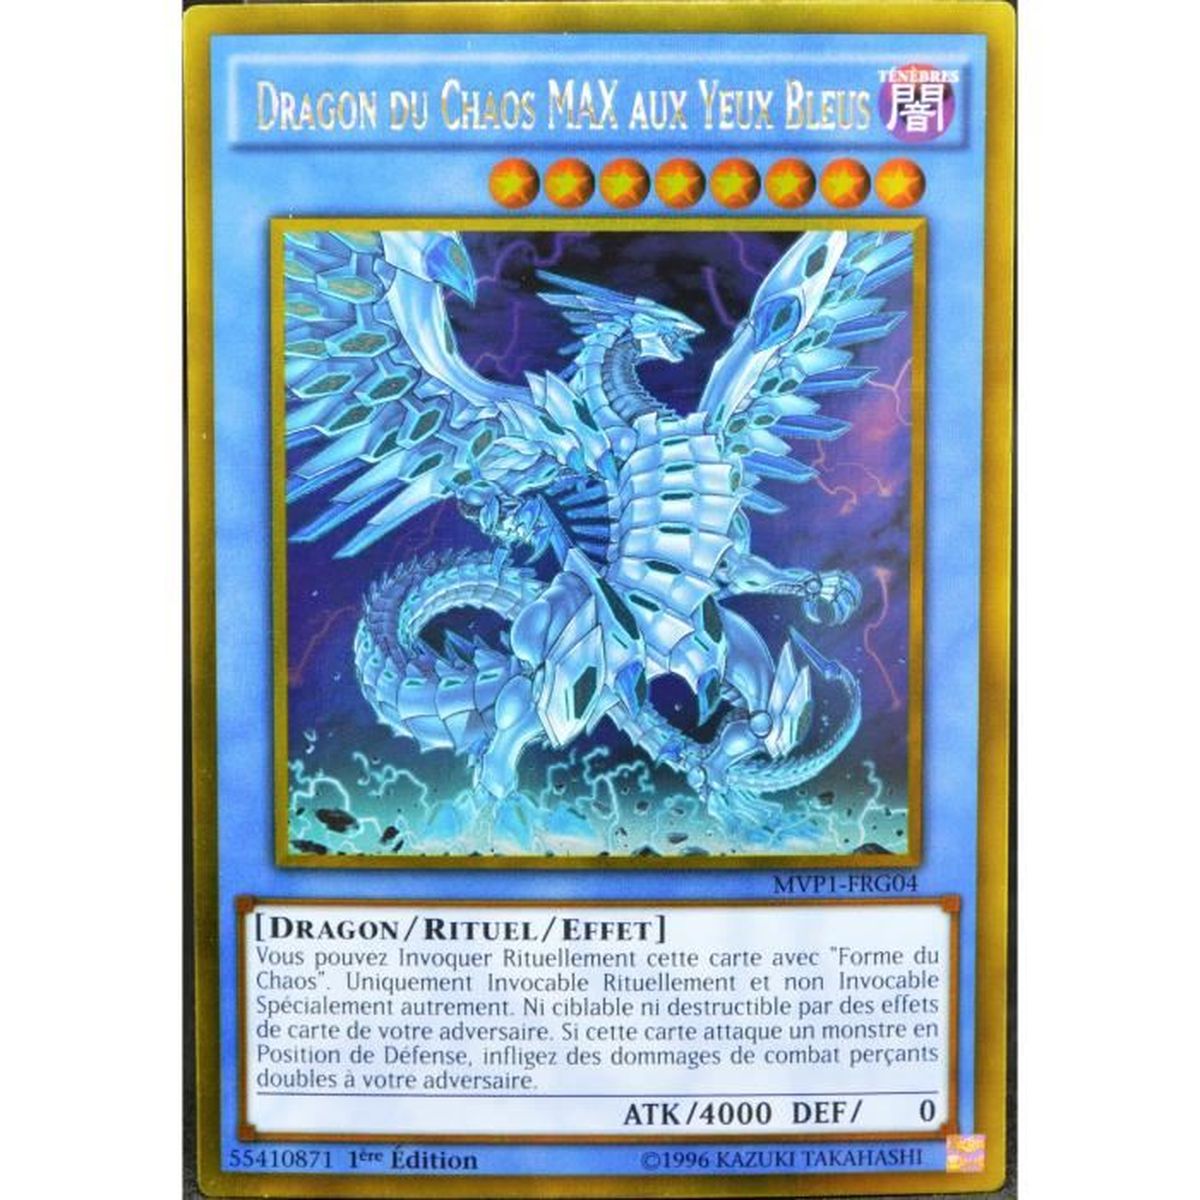 YUGIOH LOT DE 2 Dragon du Chaos Max aux yeux bleus DUPO-FR048